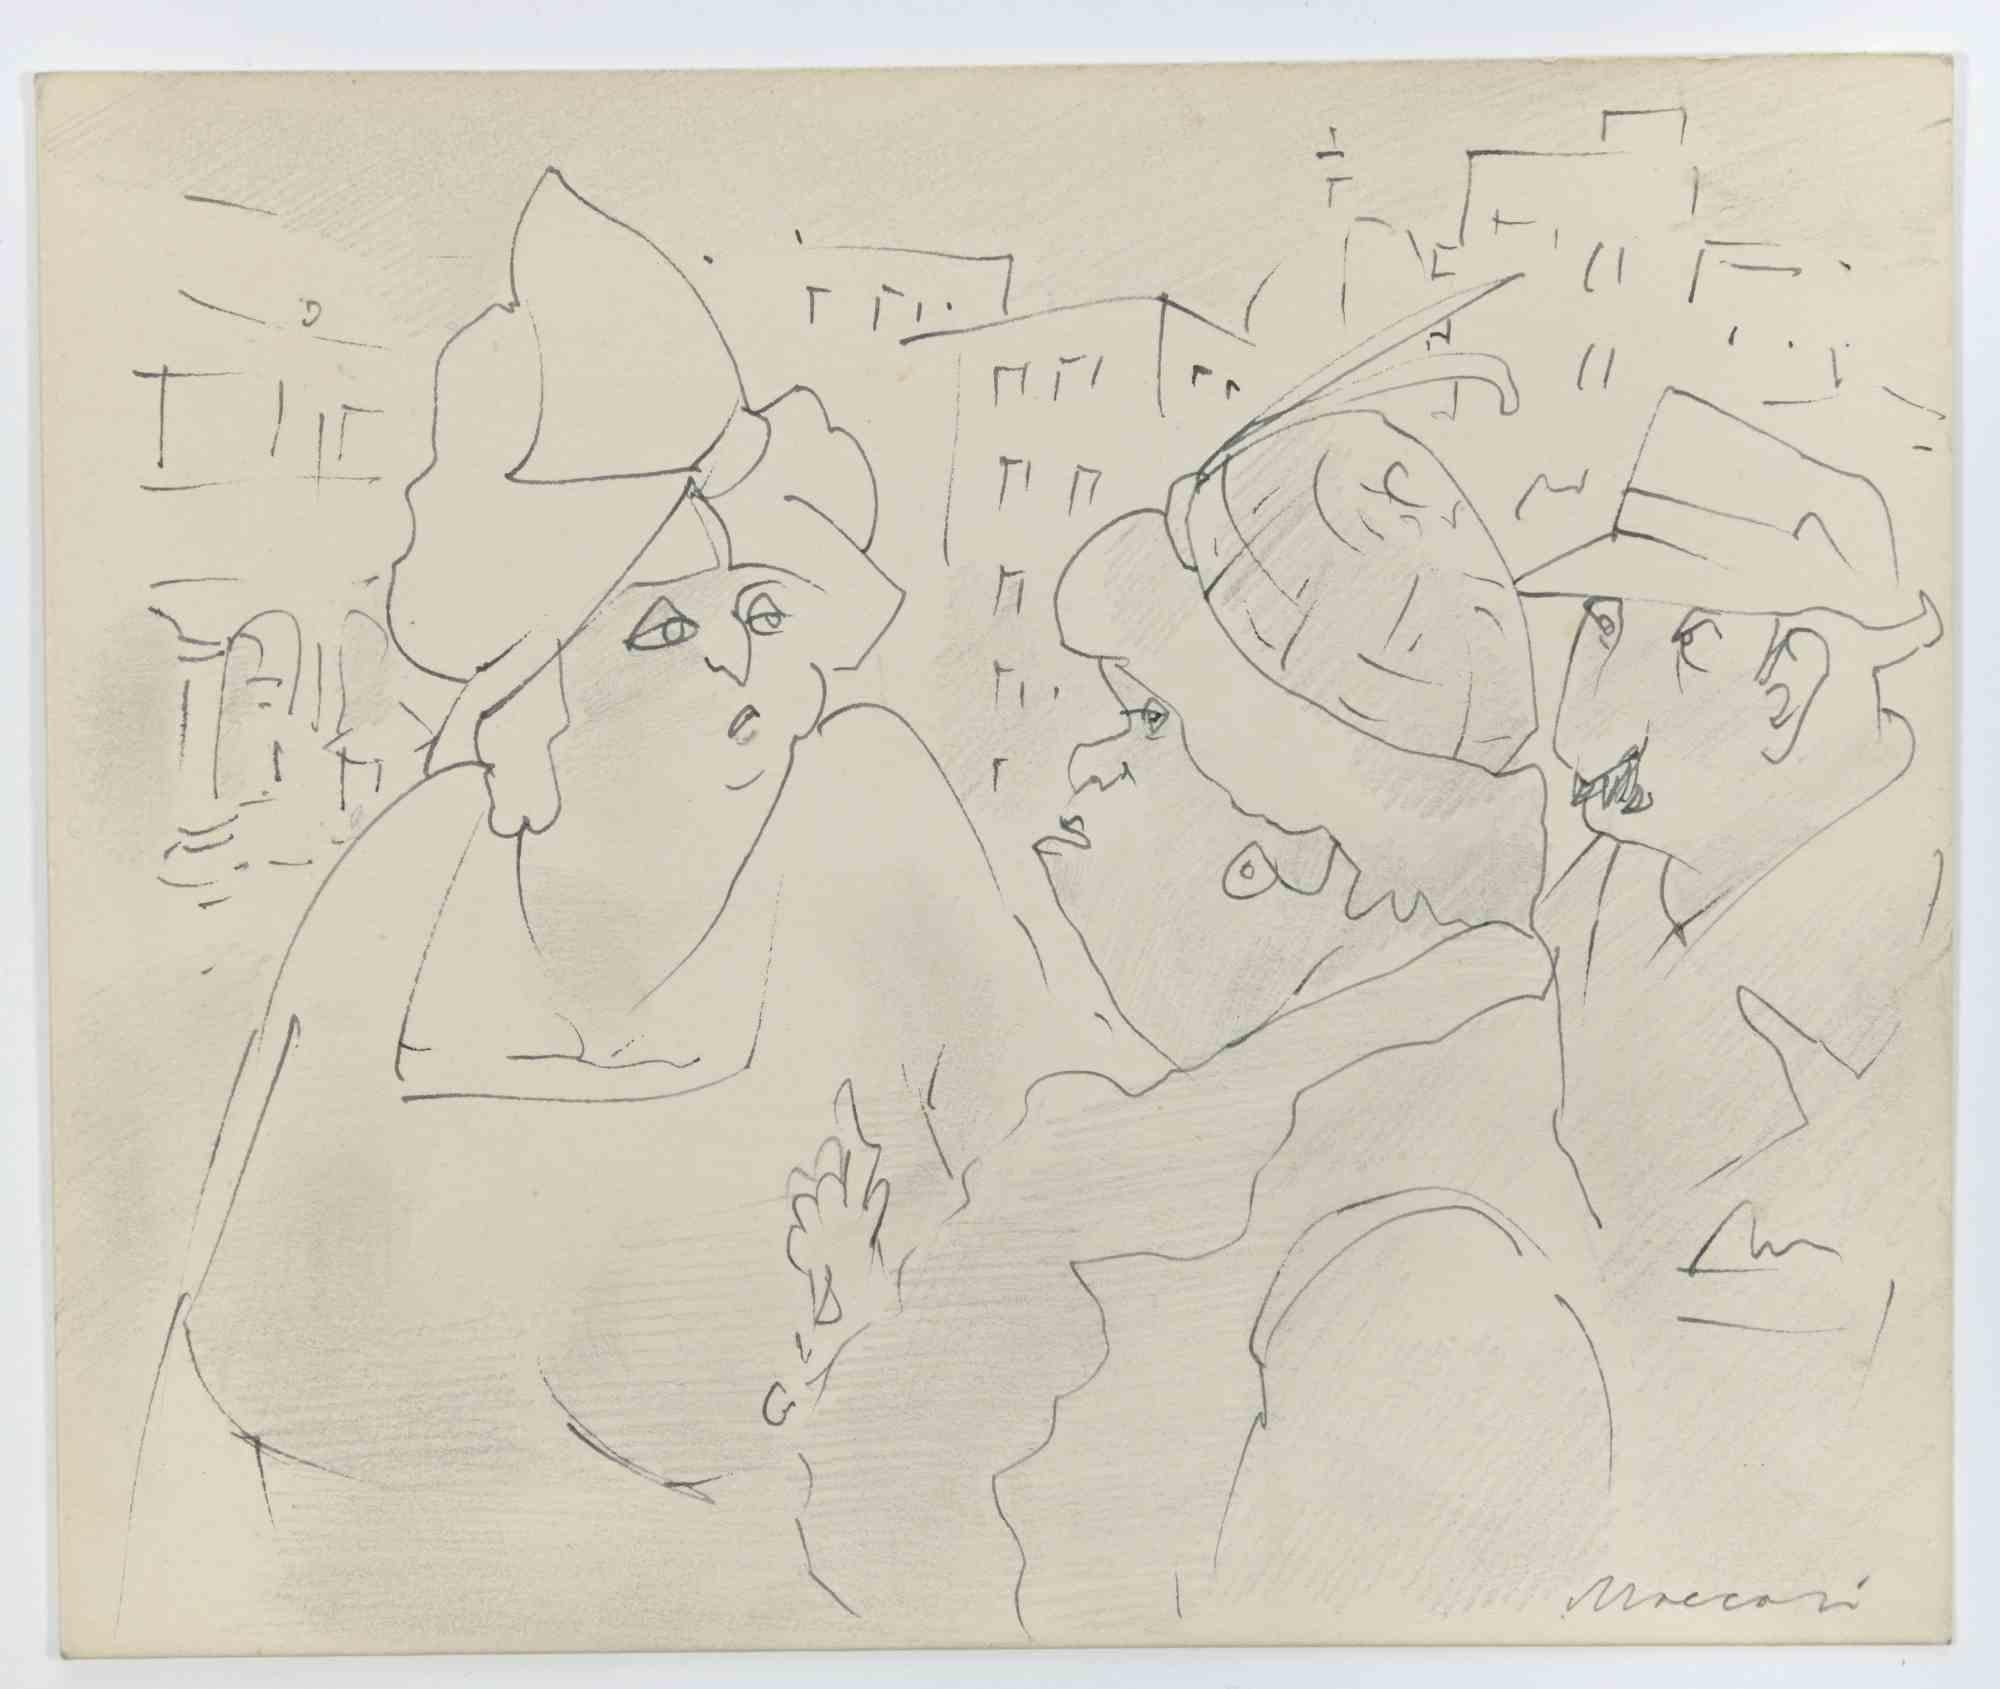 Snobby ist eine Federzeichnung realisiert von Mino Maccari  (1924-1989) in den 1960er Jahren.

Handsigniert am unteren Rand.

Guter Zustand.

Mino Maccari (Siena, 1924-Rom, 16. Juni 1989) war ein italienischer Schriftsteller, Maler, Graveur und